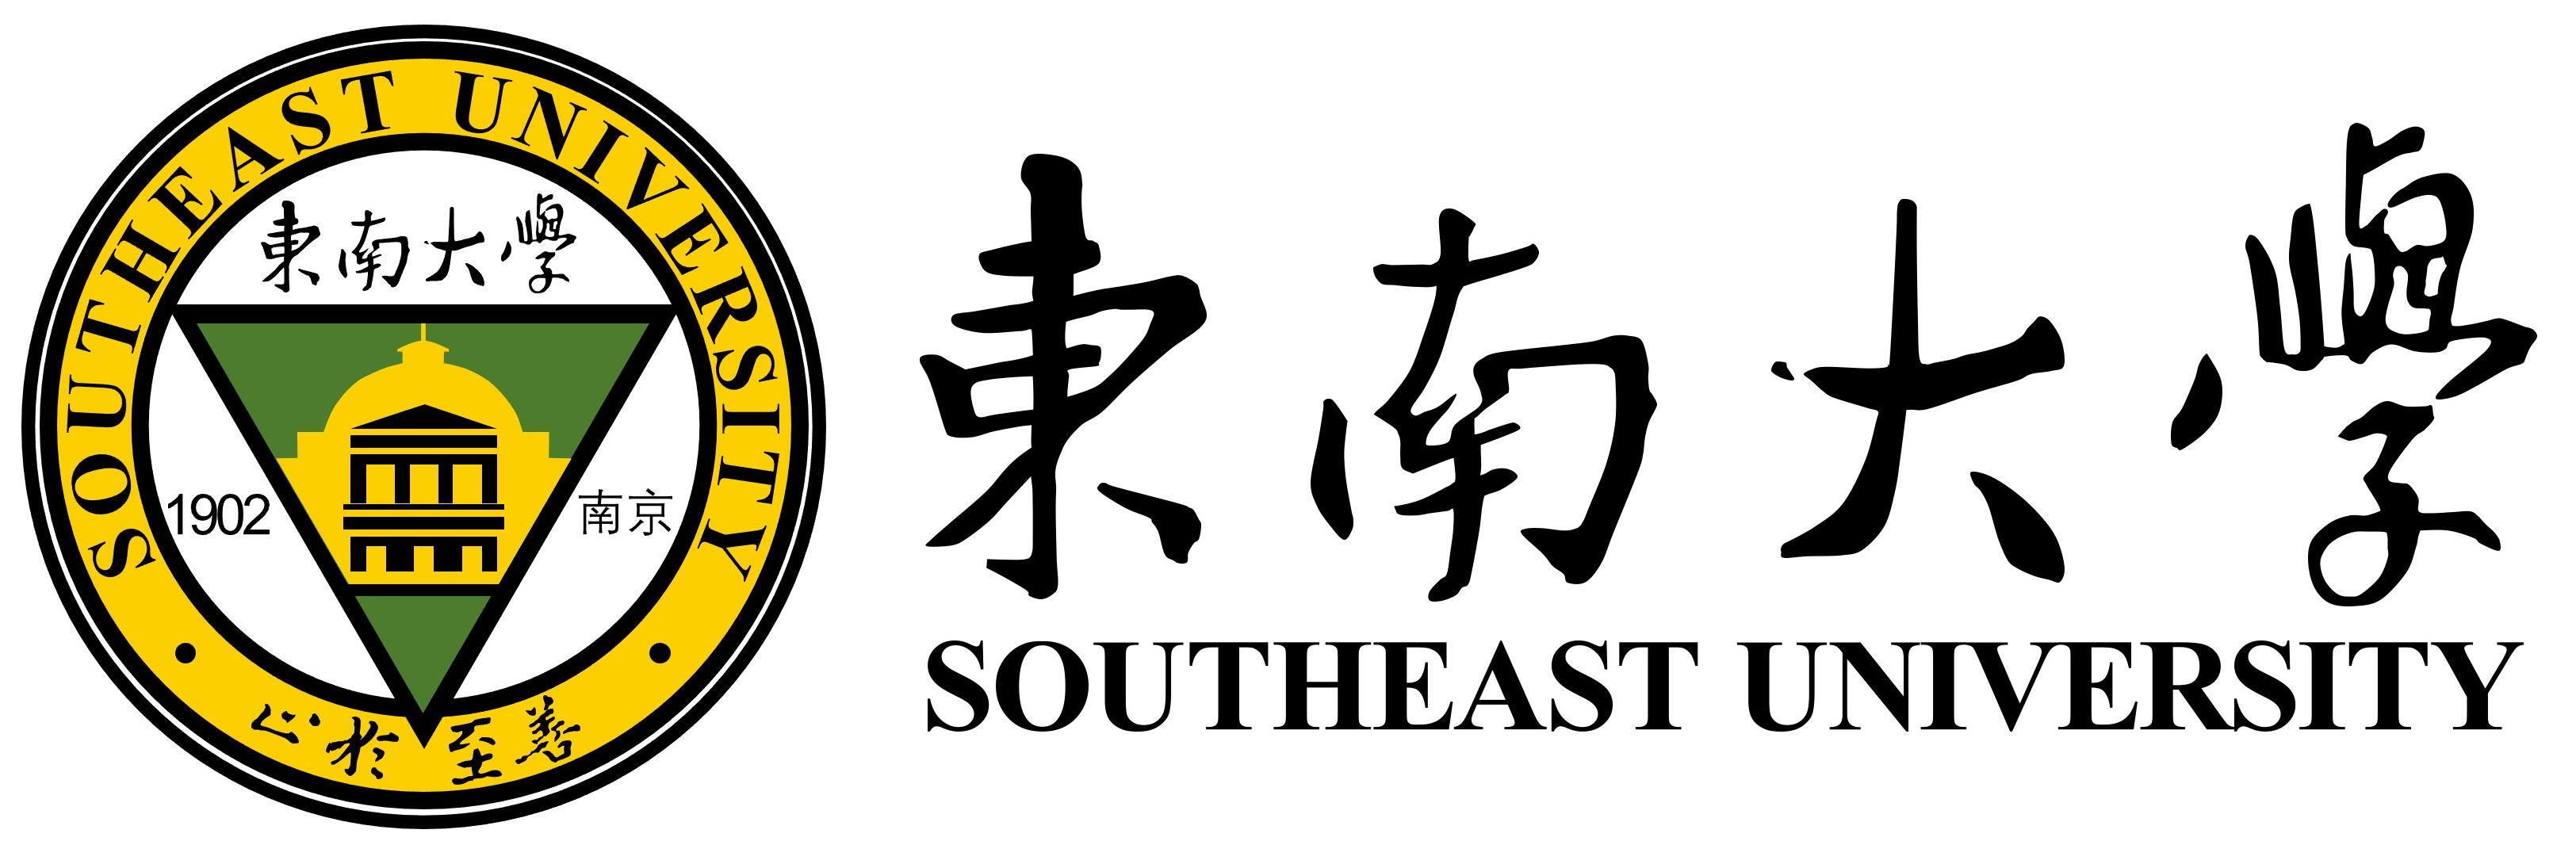 东南大学logo.jpg